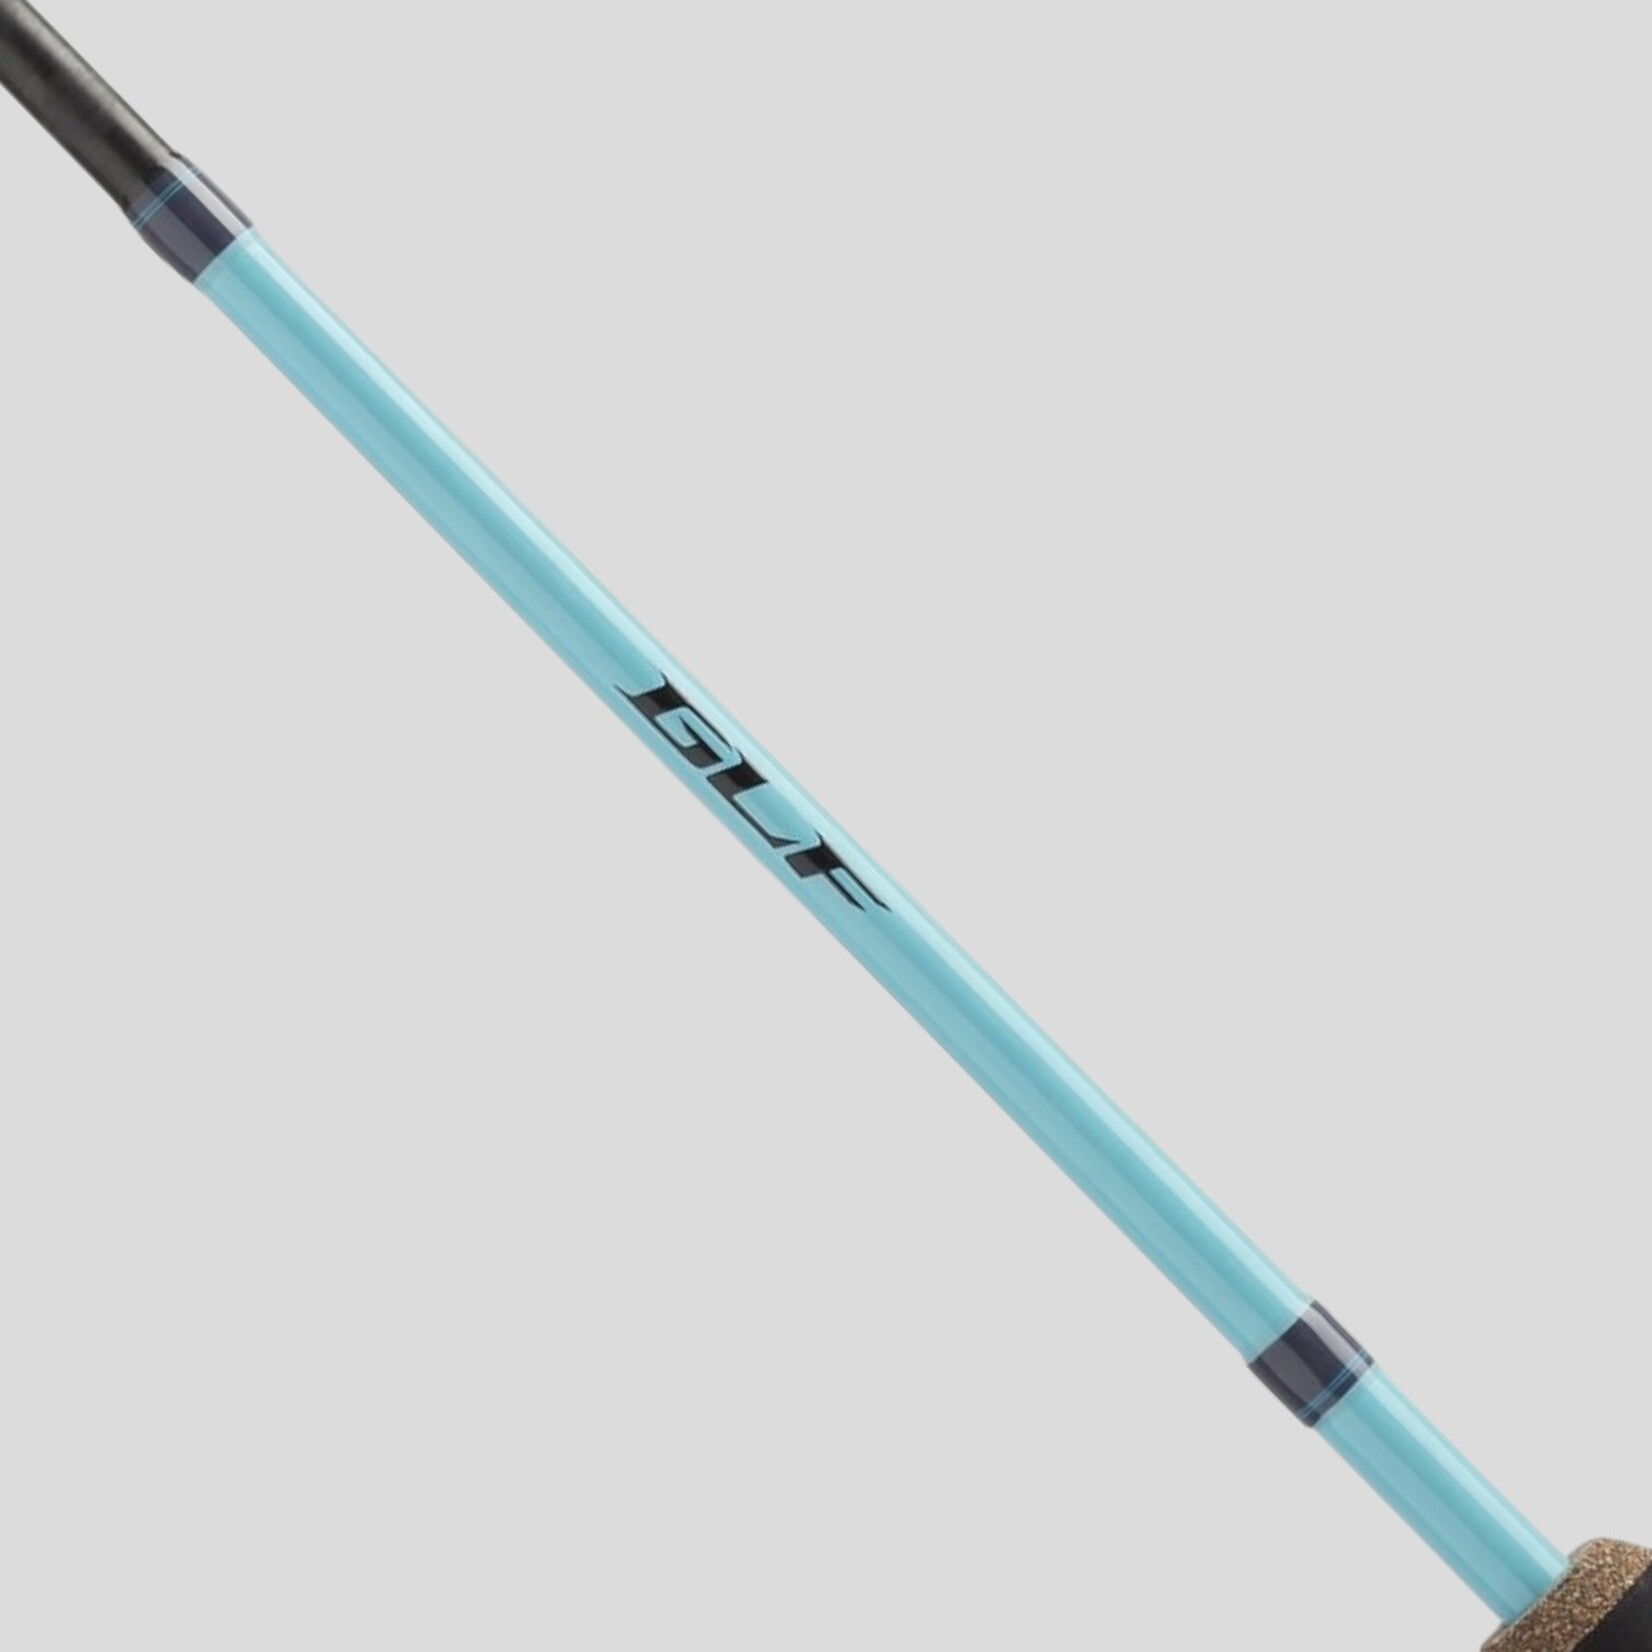 Shimano Shimano GLF(B)  Casting Rod